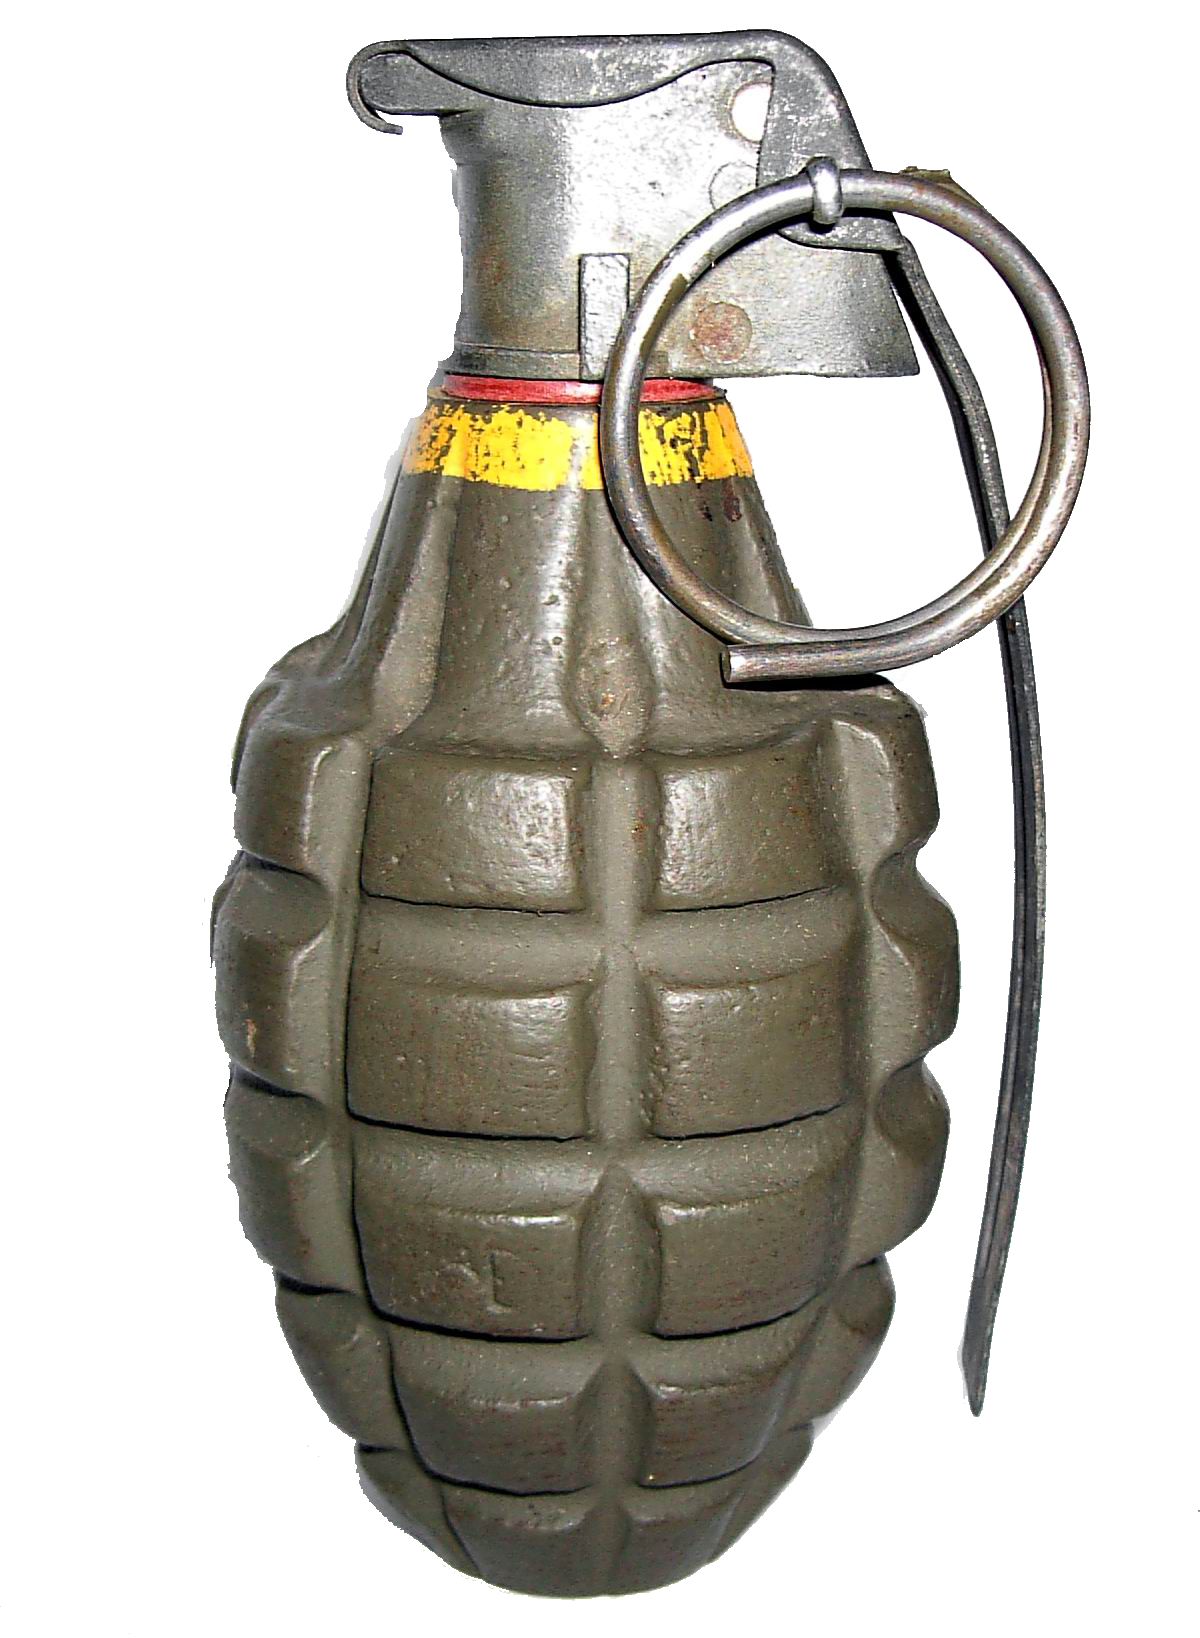 Hand grenade PNG